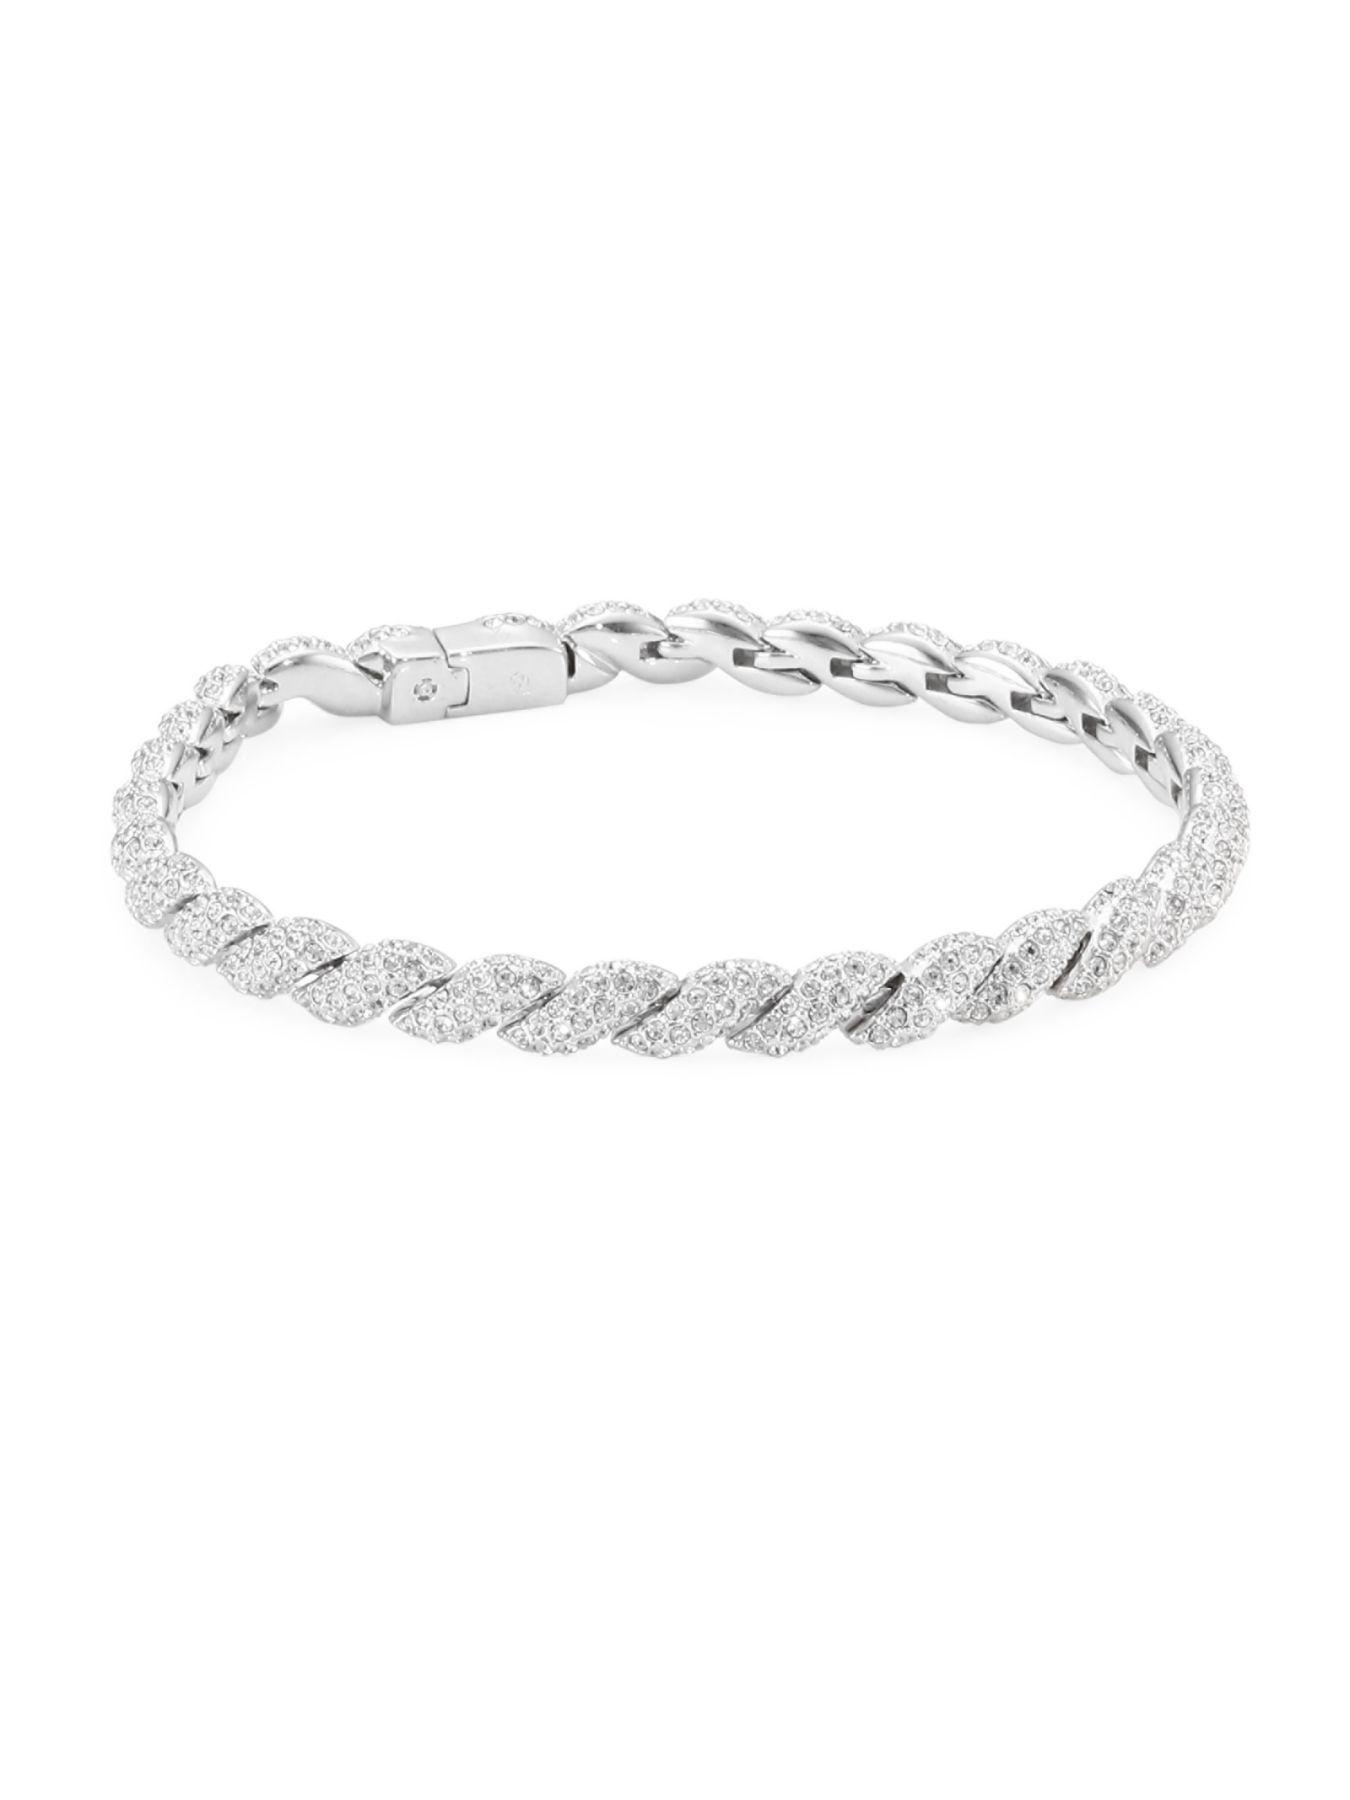 Adriana Orsini Flexible Swarovski Crystallink Bracelet in Silver ...